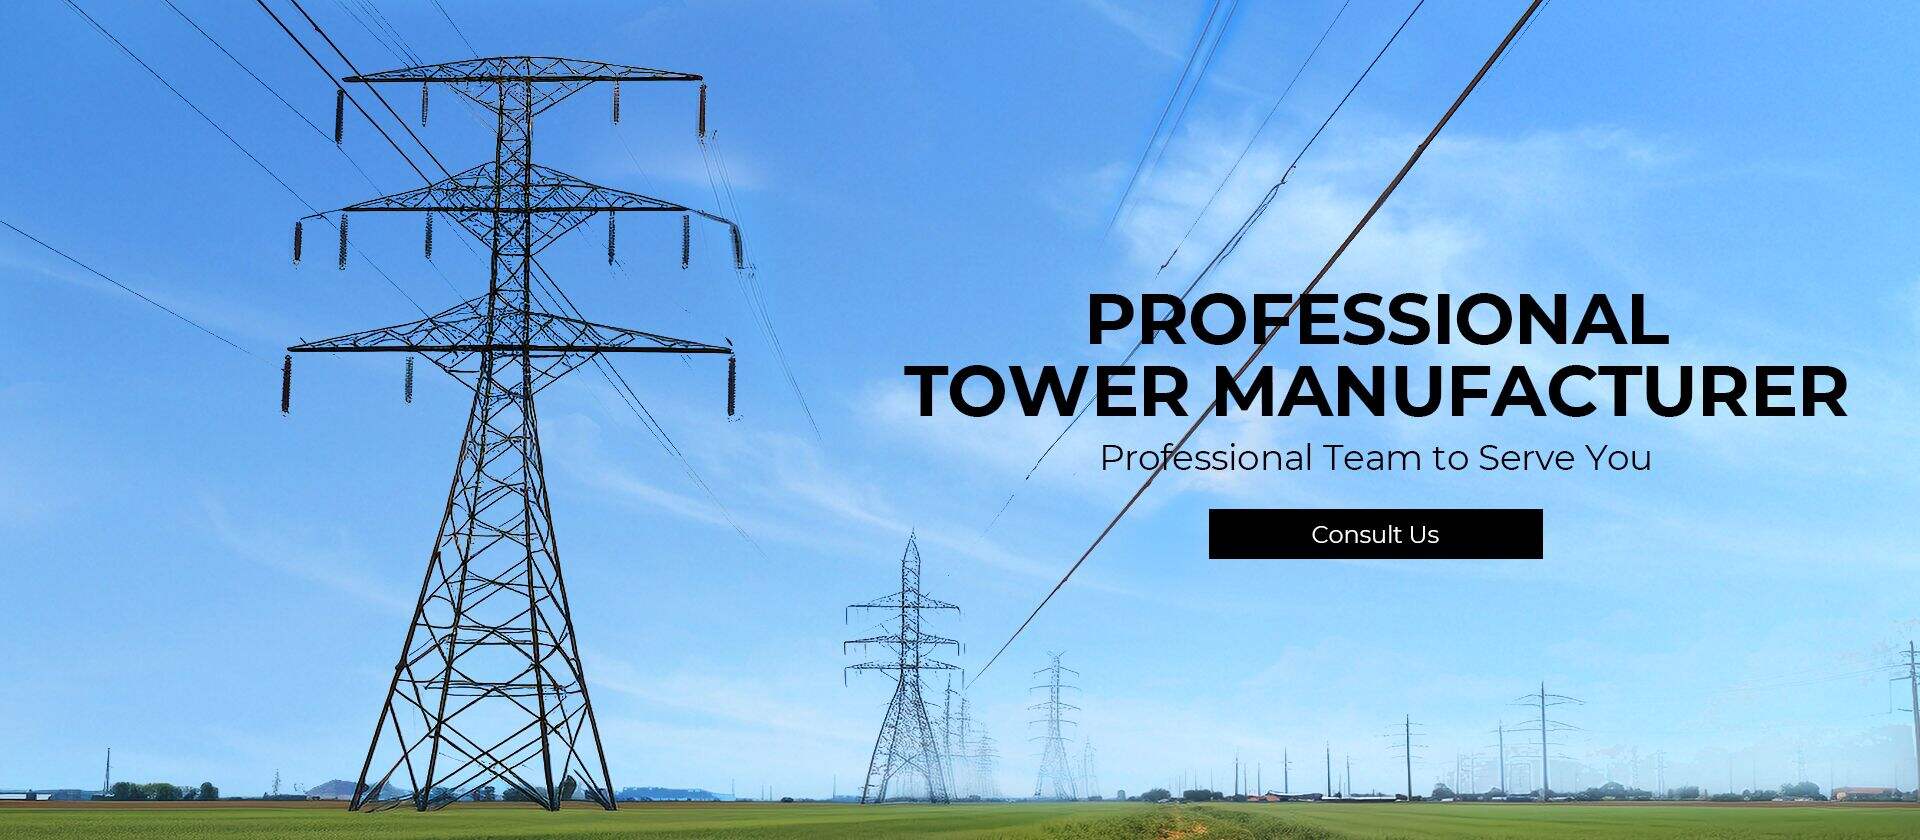 Xinhang Tower Technology Co, Ltd.